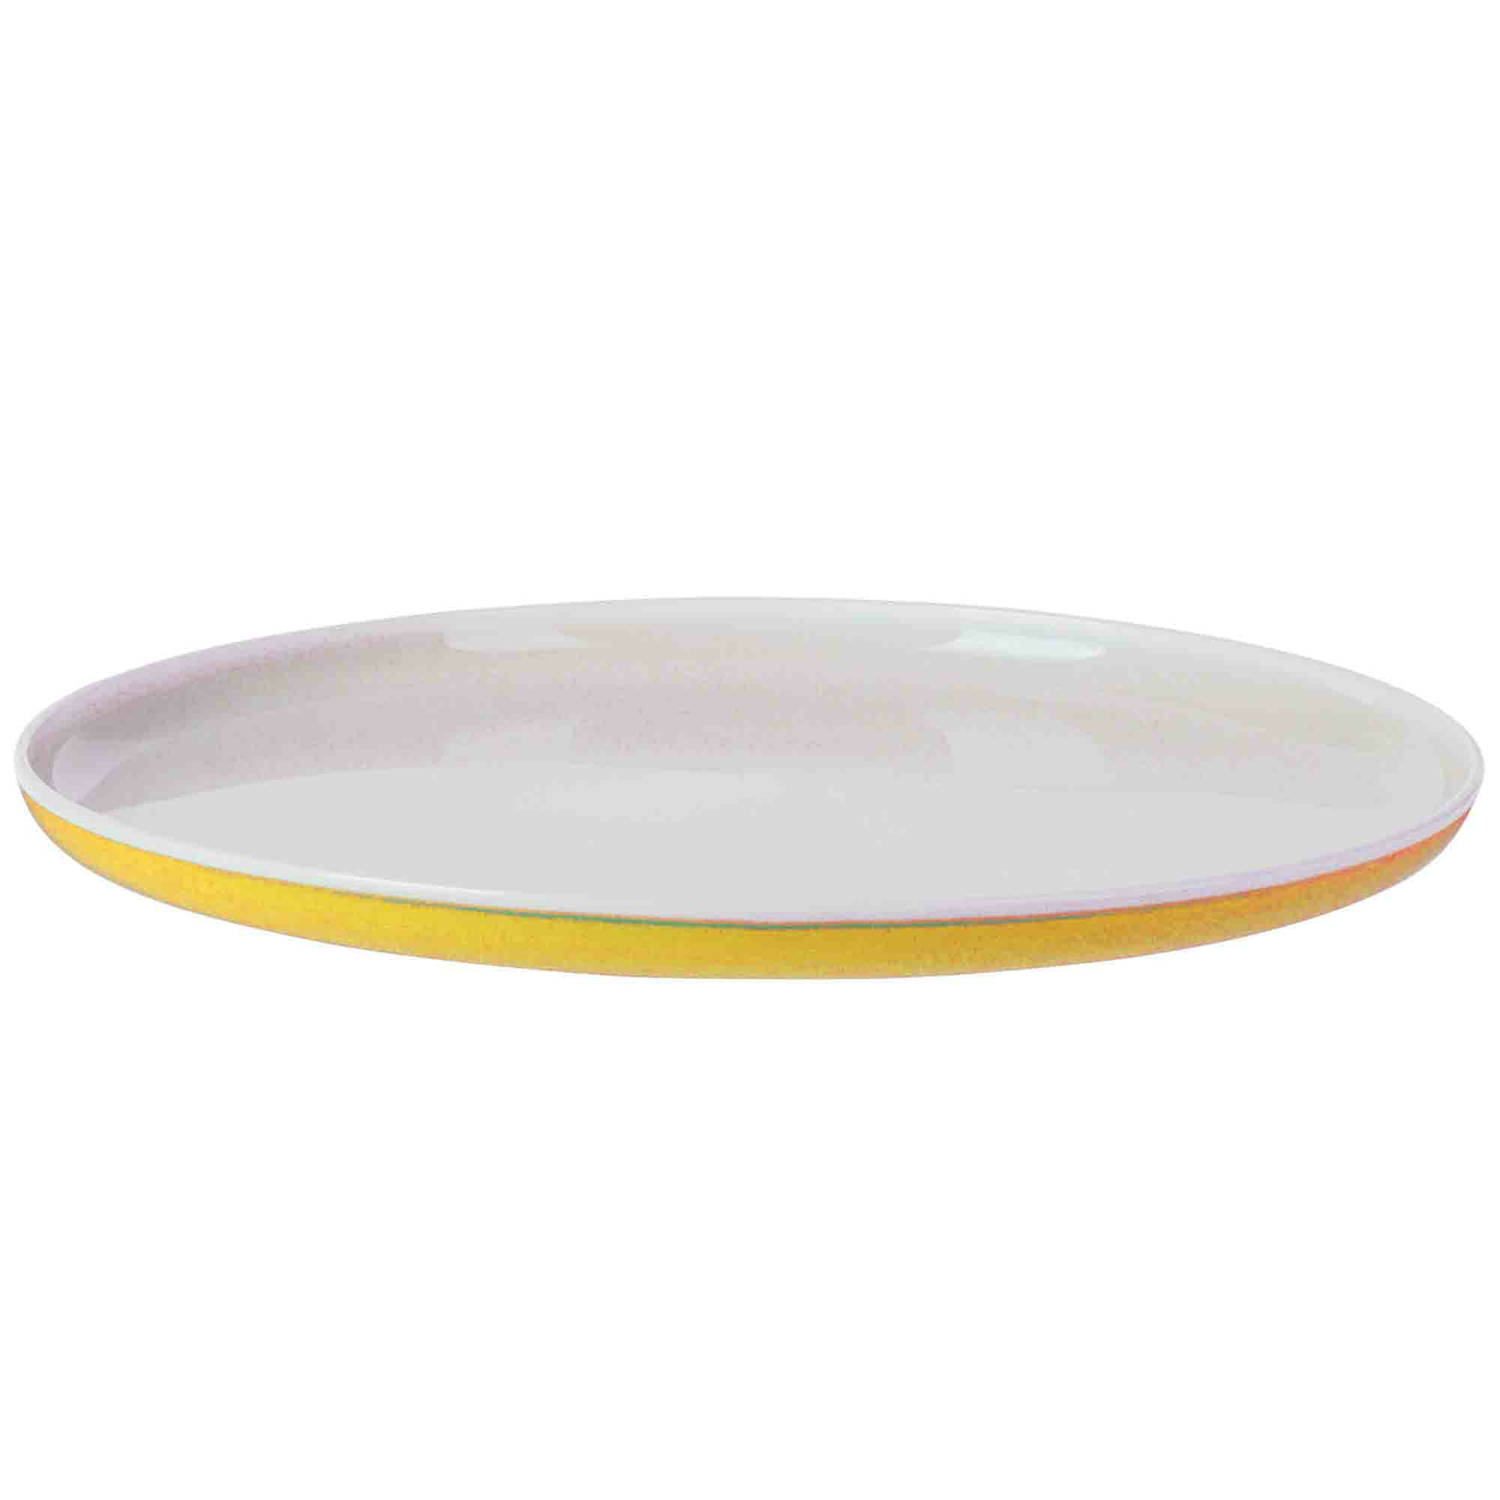 Onbreekbaar ontbijt/diner bord - geel - kunststof - 25 cm - Campingborden